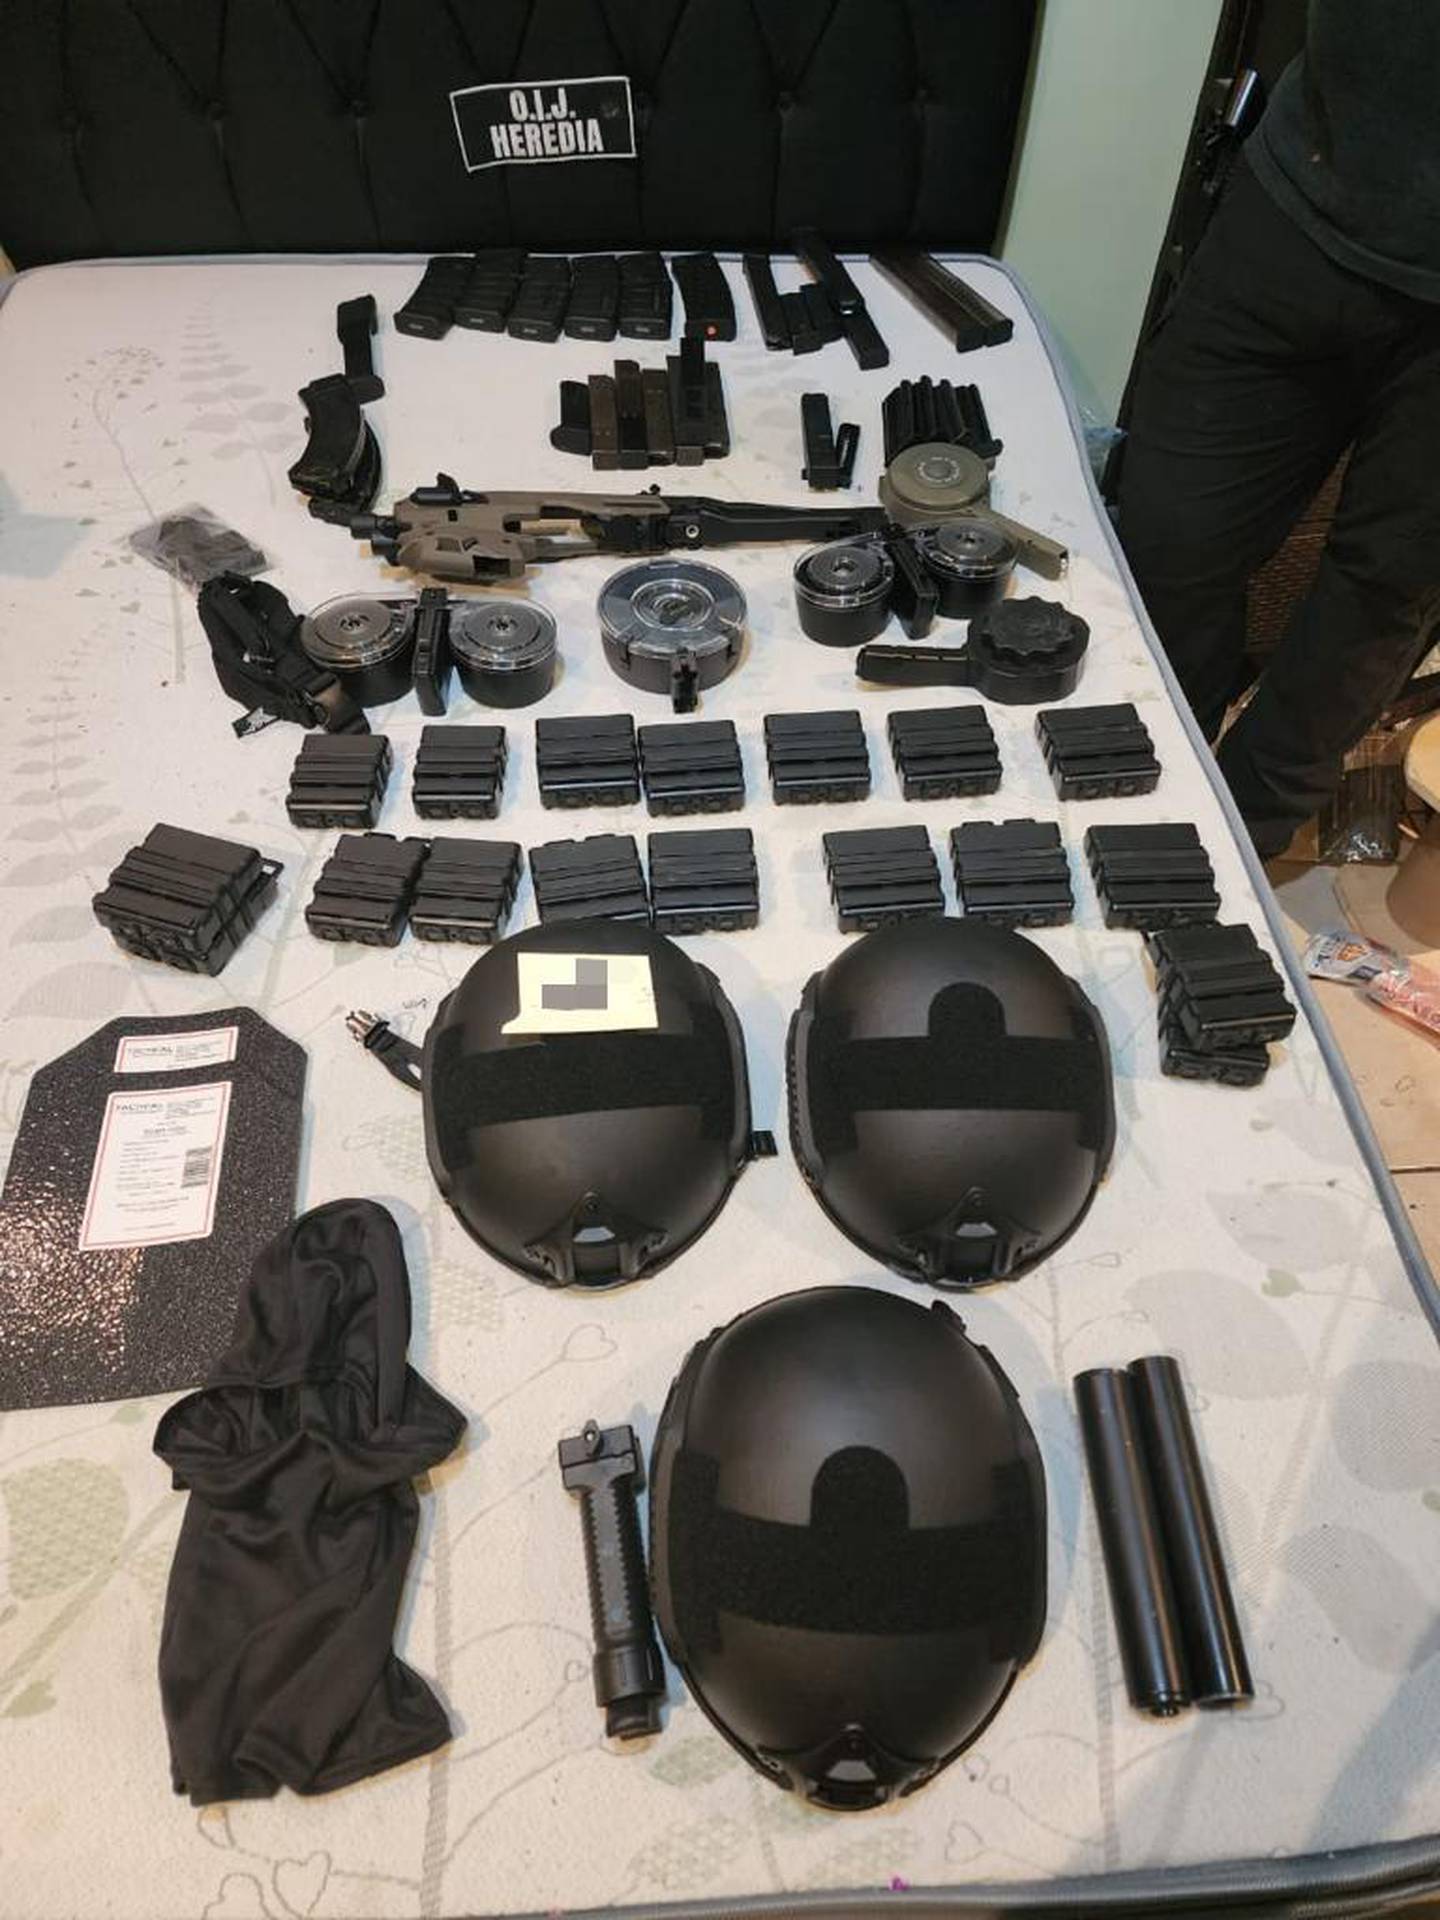 Las autoridades decomisaron granadas, armas de guerra y droga a una banda. Foto: OIJ